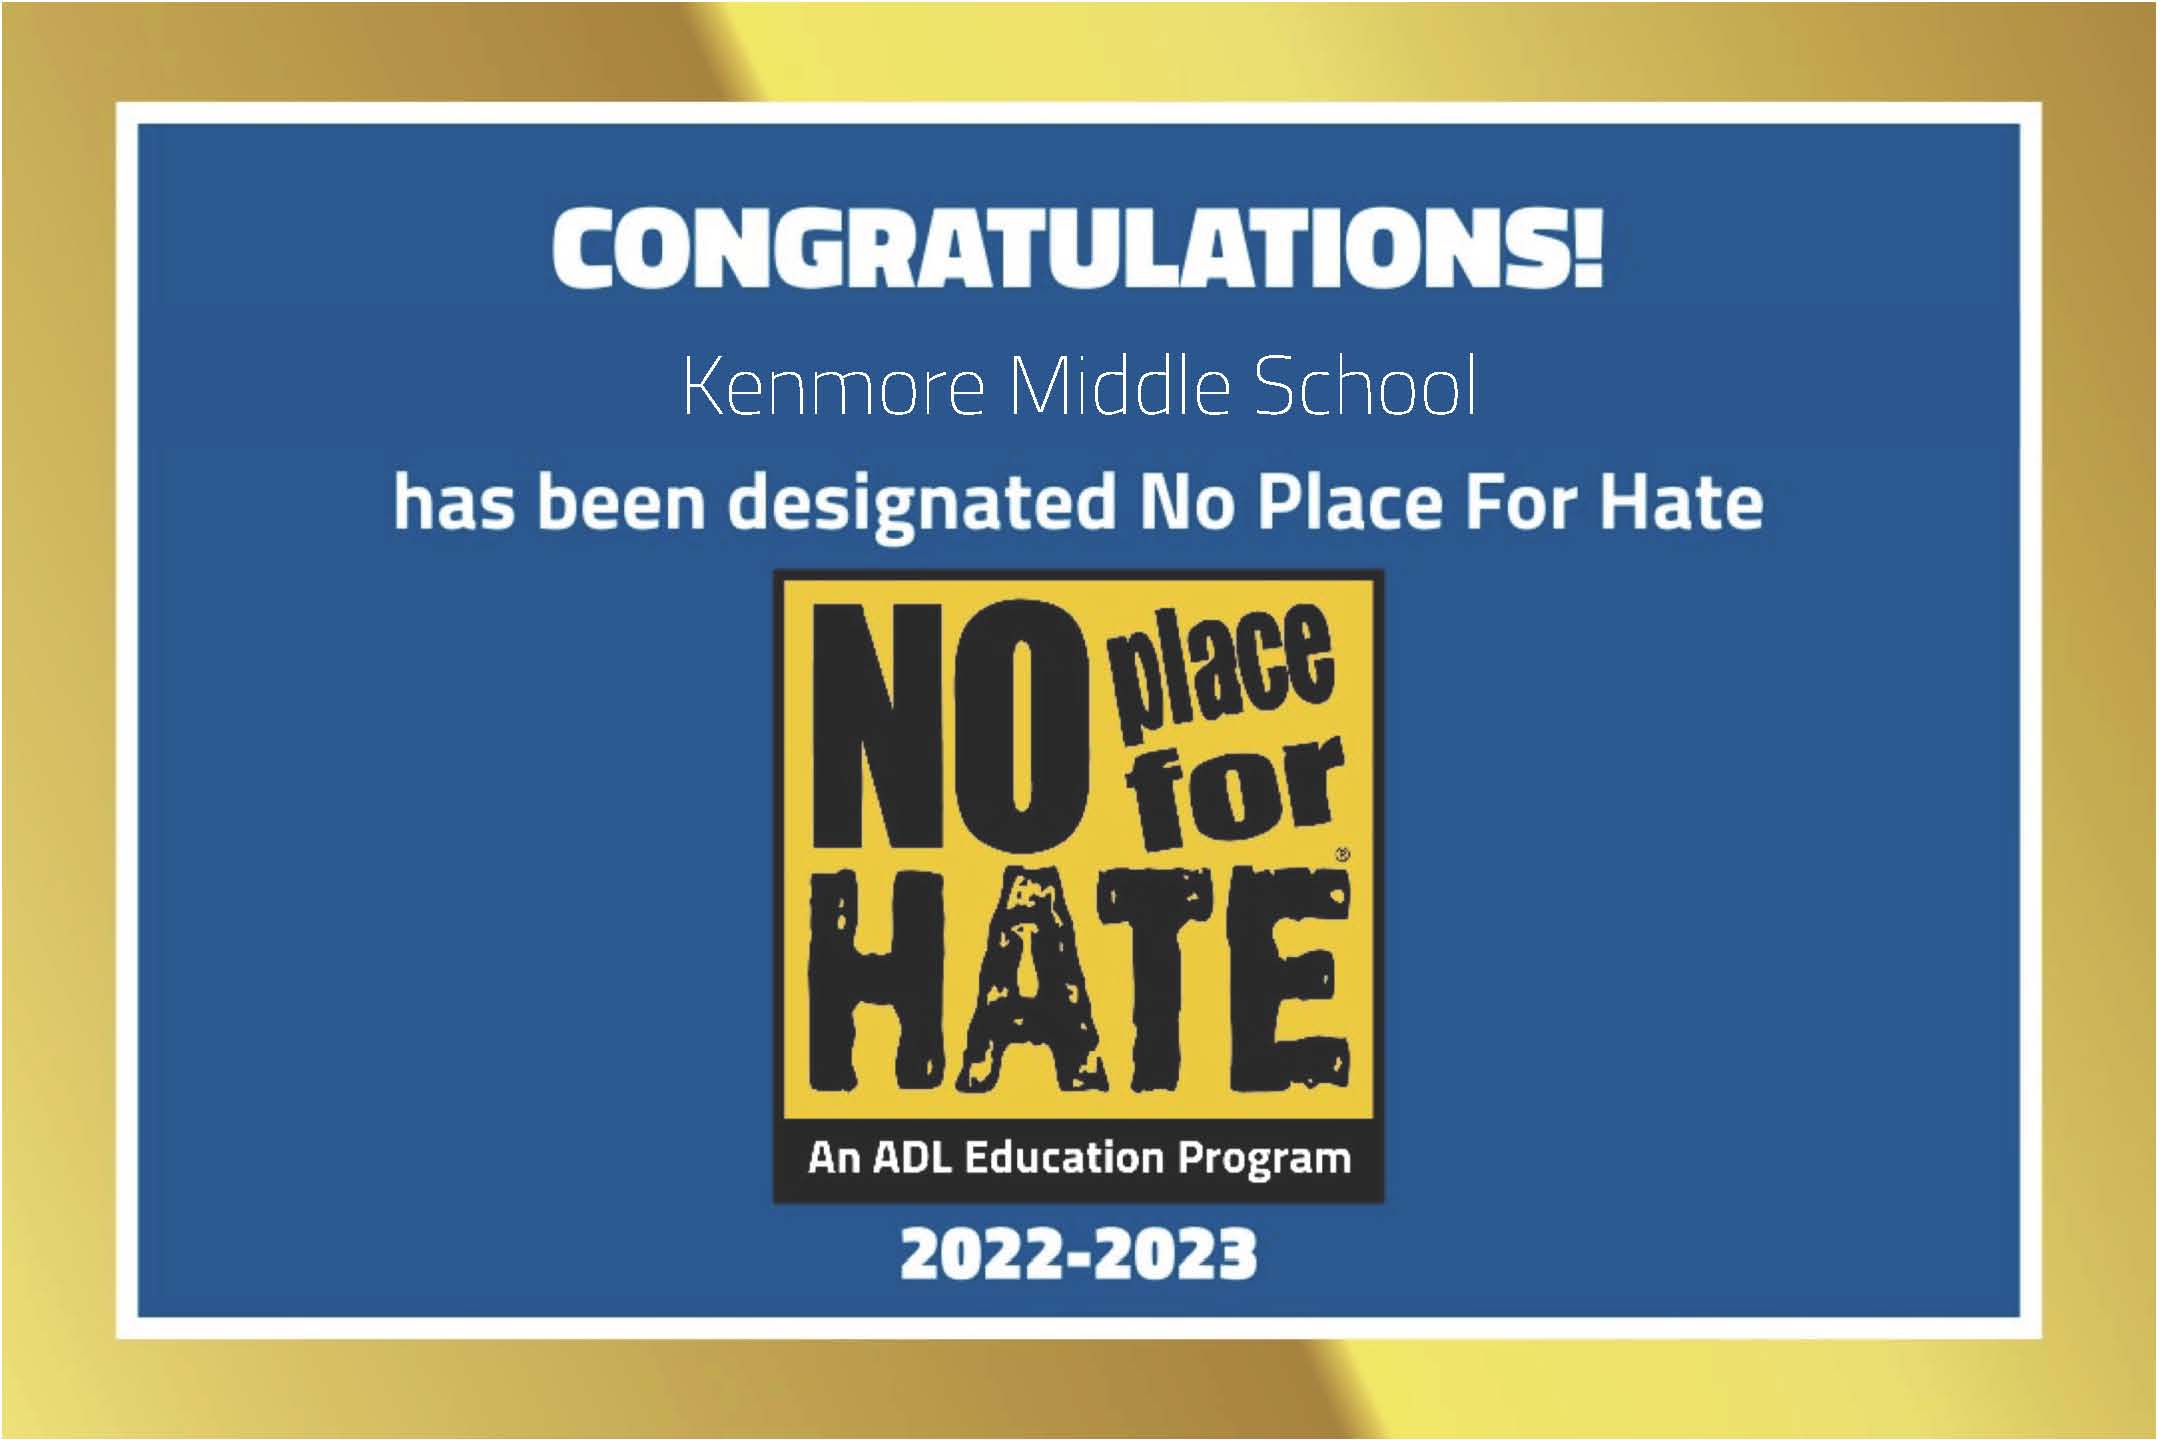 Kenmore는 2022-2023 학년도에 No Place for Hate 학교로 지정되었습니다!